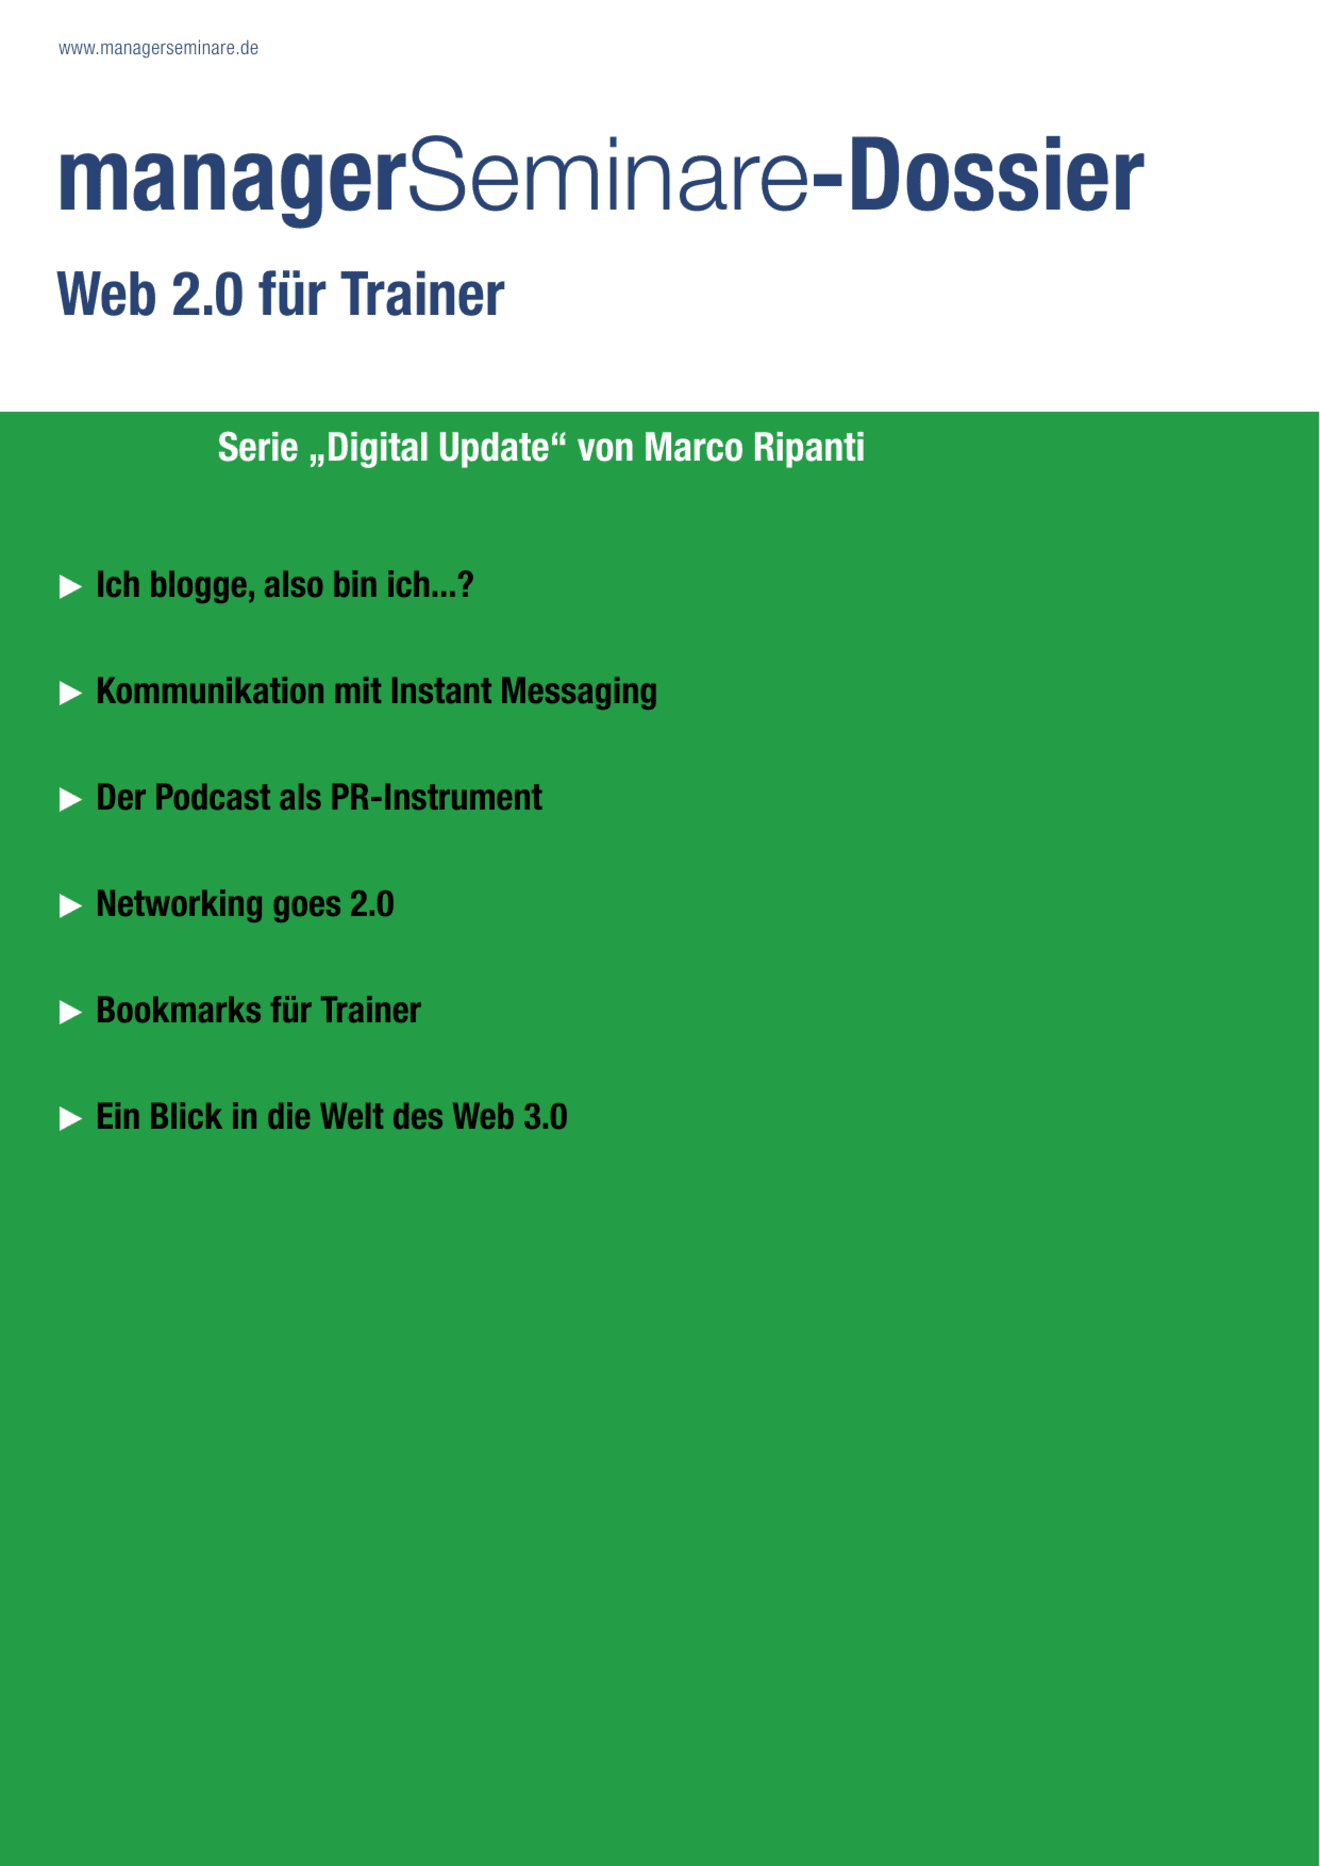 Dossier Web 2.0 für Trainer